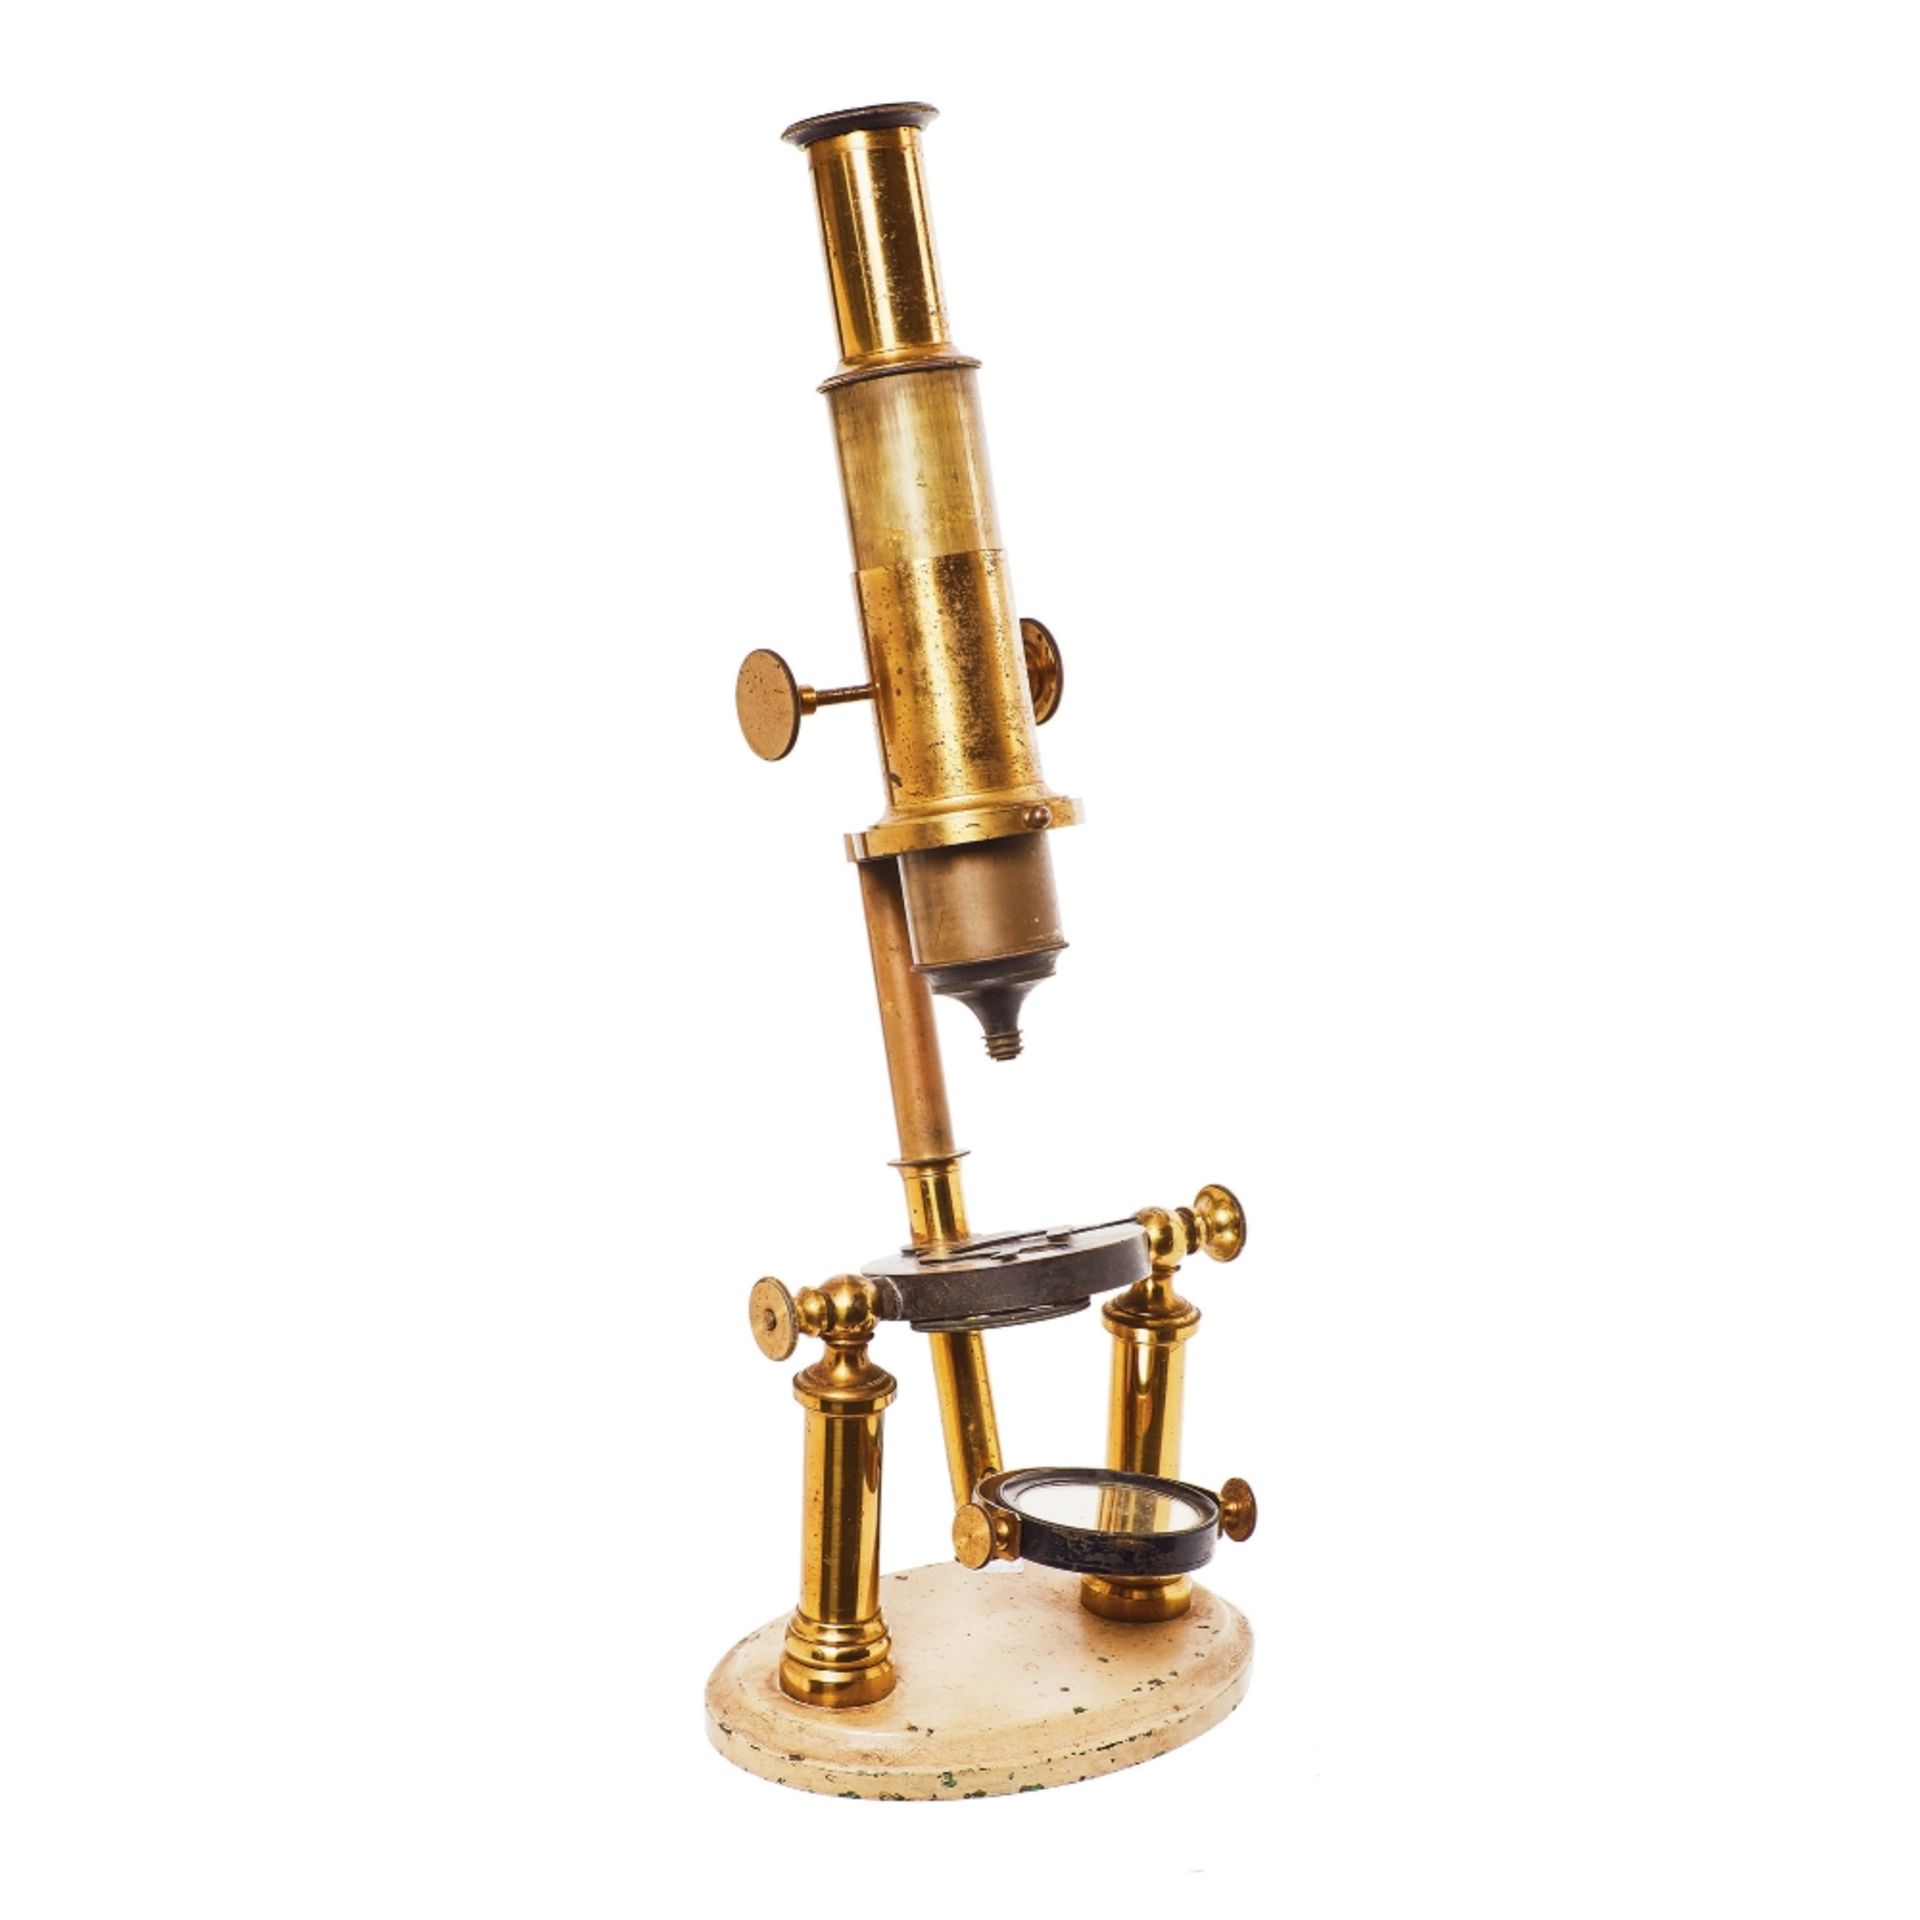 Microscopio en latón y hierro lacado, ppios. del s.XX. 48 x 18,5 x 13,5 cm.